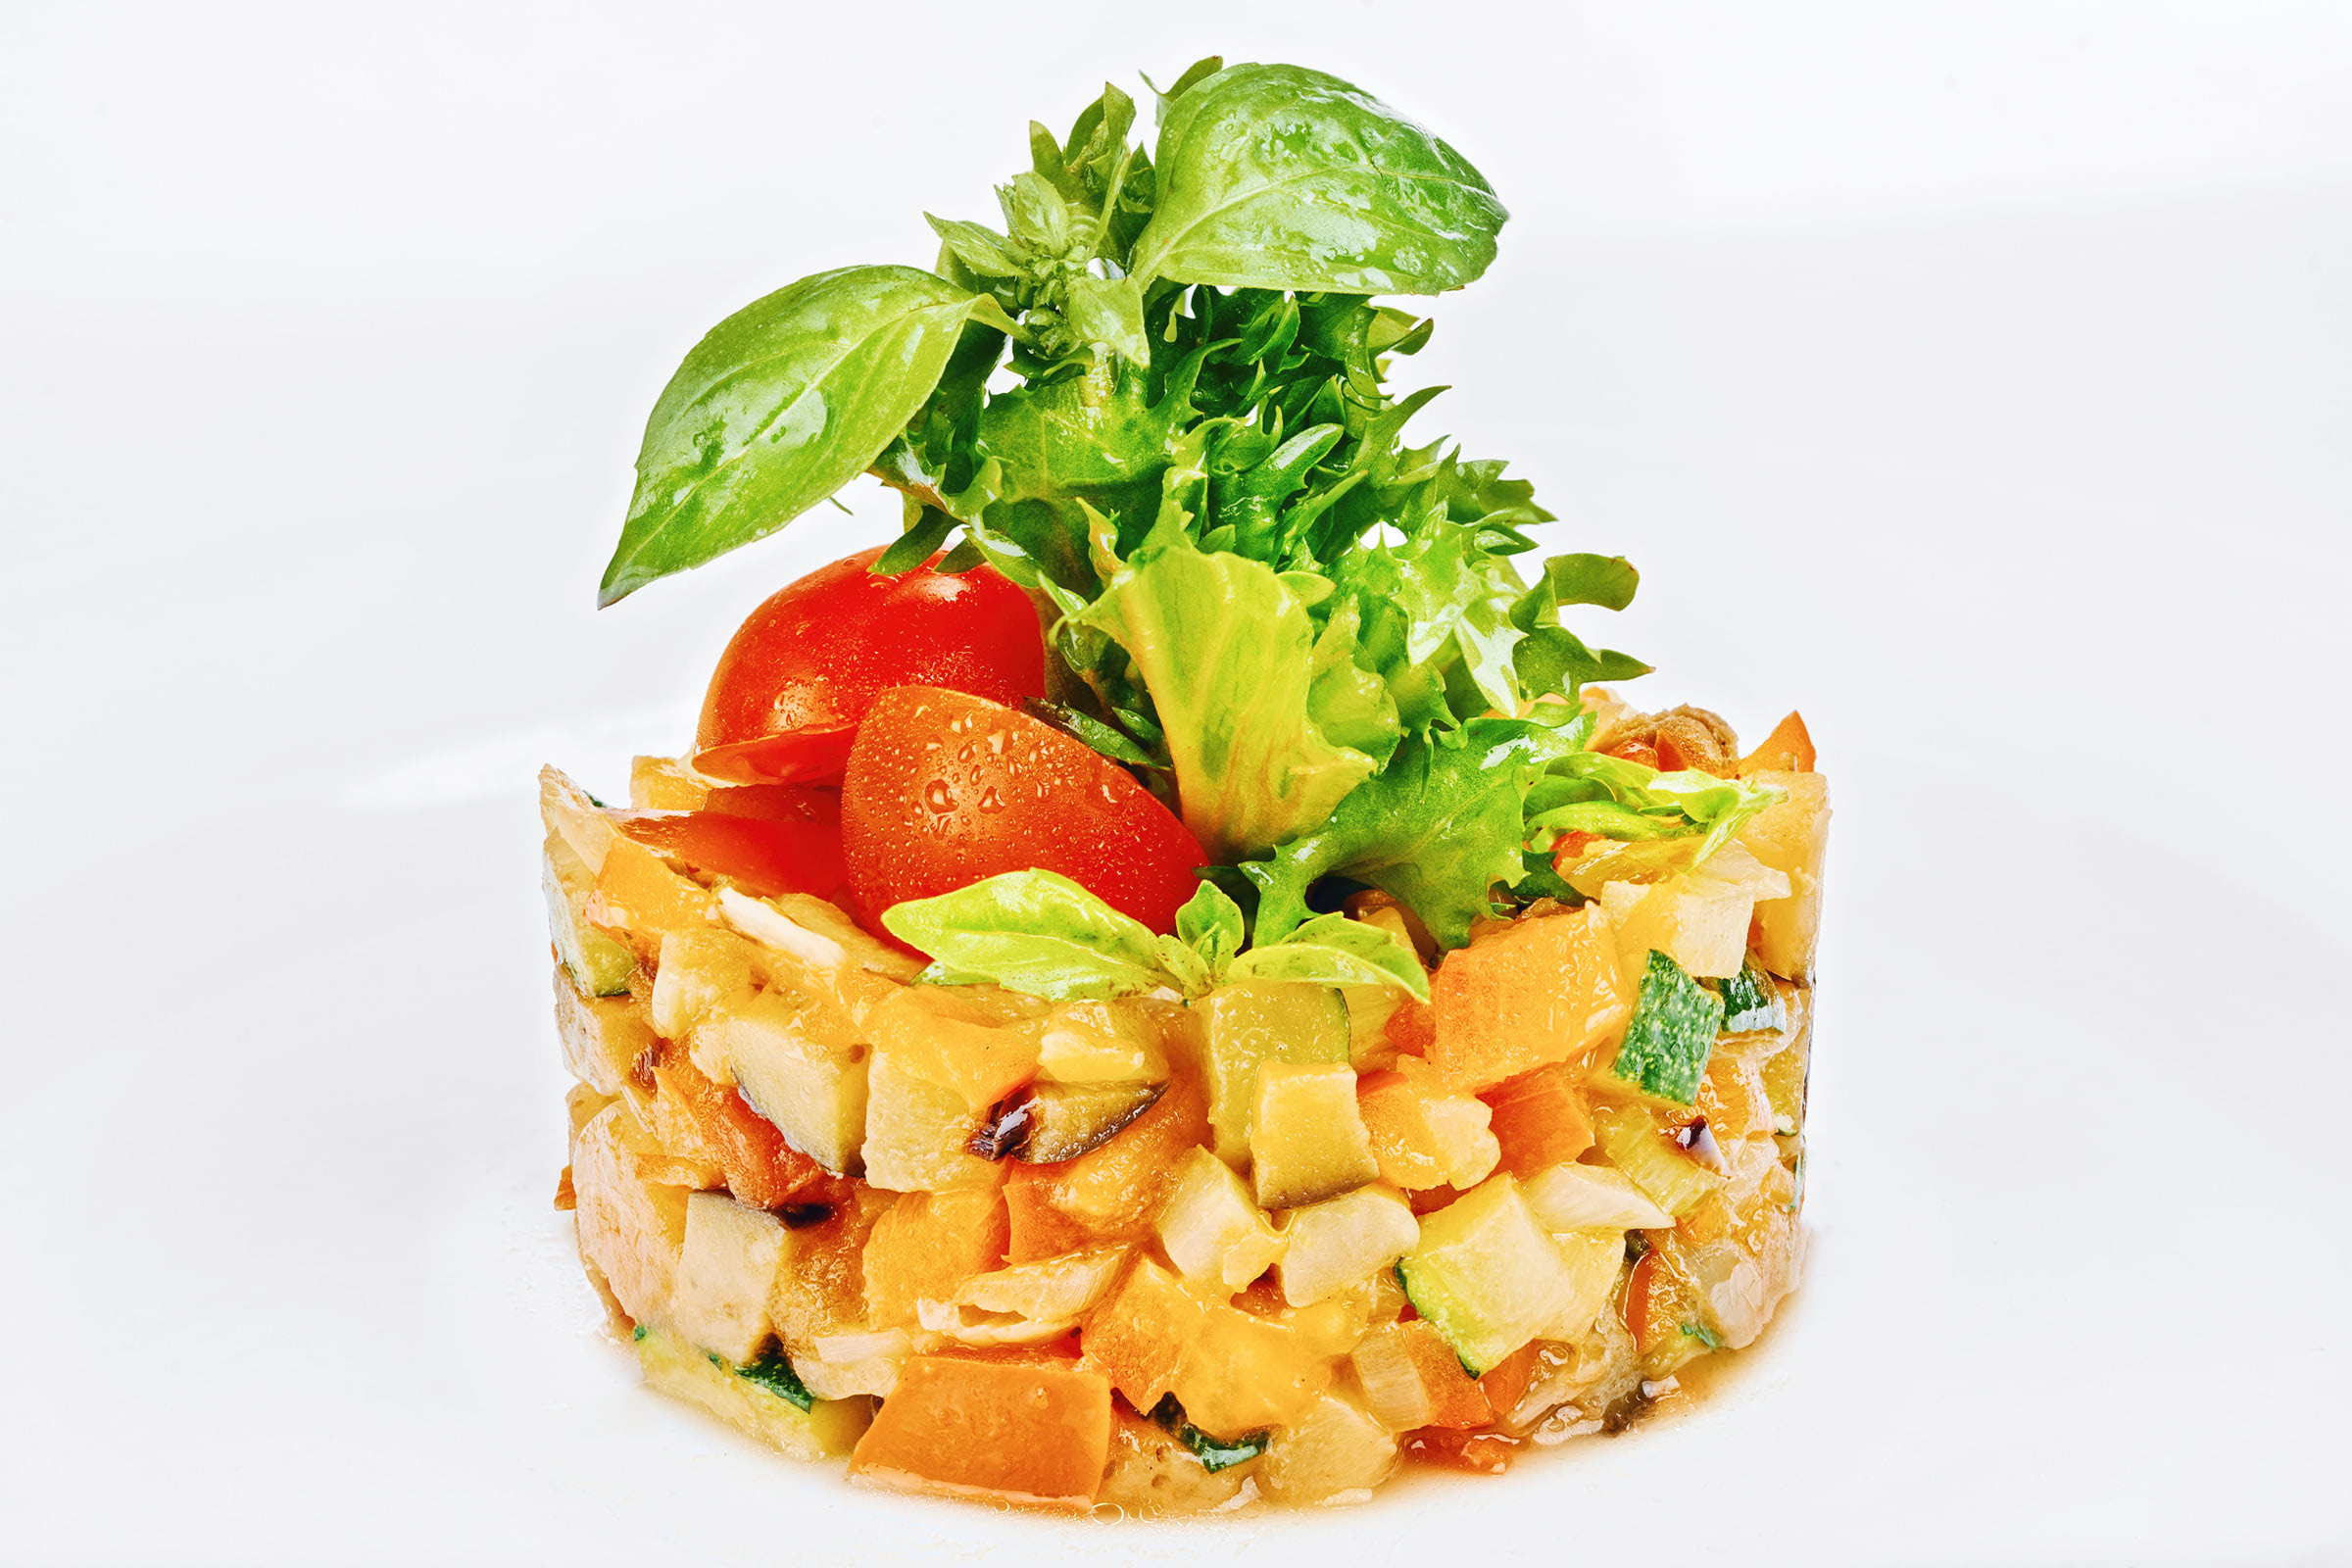 Съёмка ресторанных блюд и напитков для печатного меню или сайта; фото закусочного блюда салат из кусочков свежих овощей украшен листьями свежей рукколы и томатами